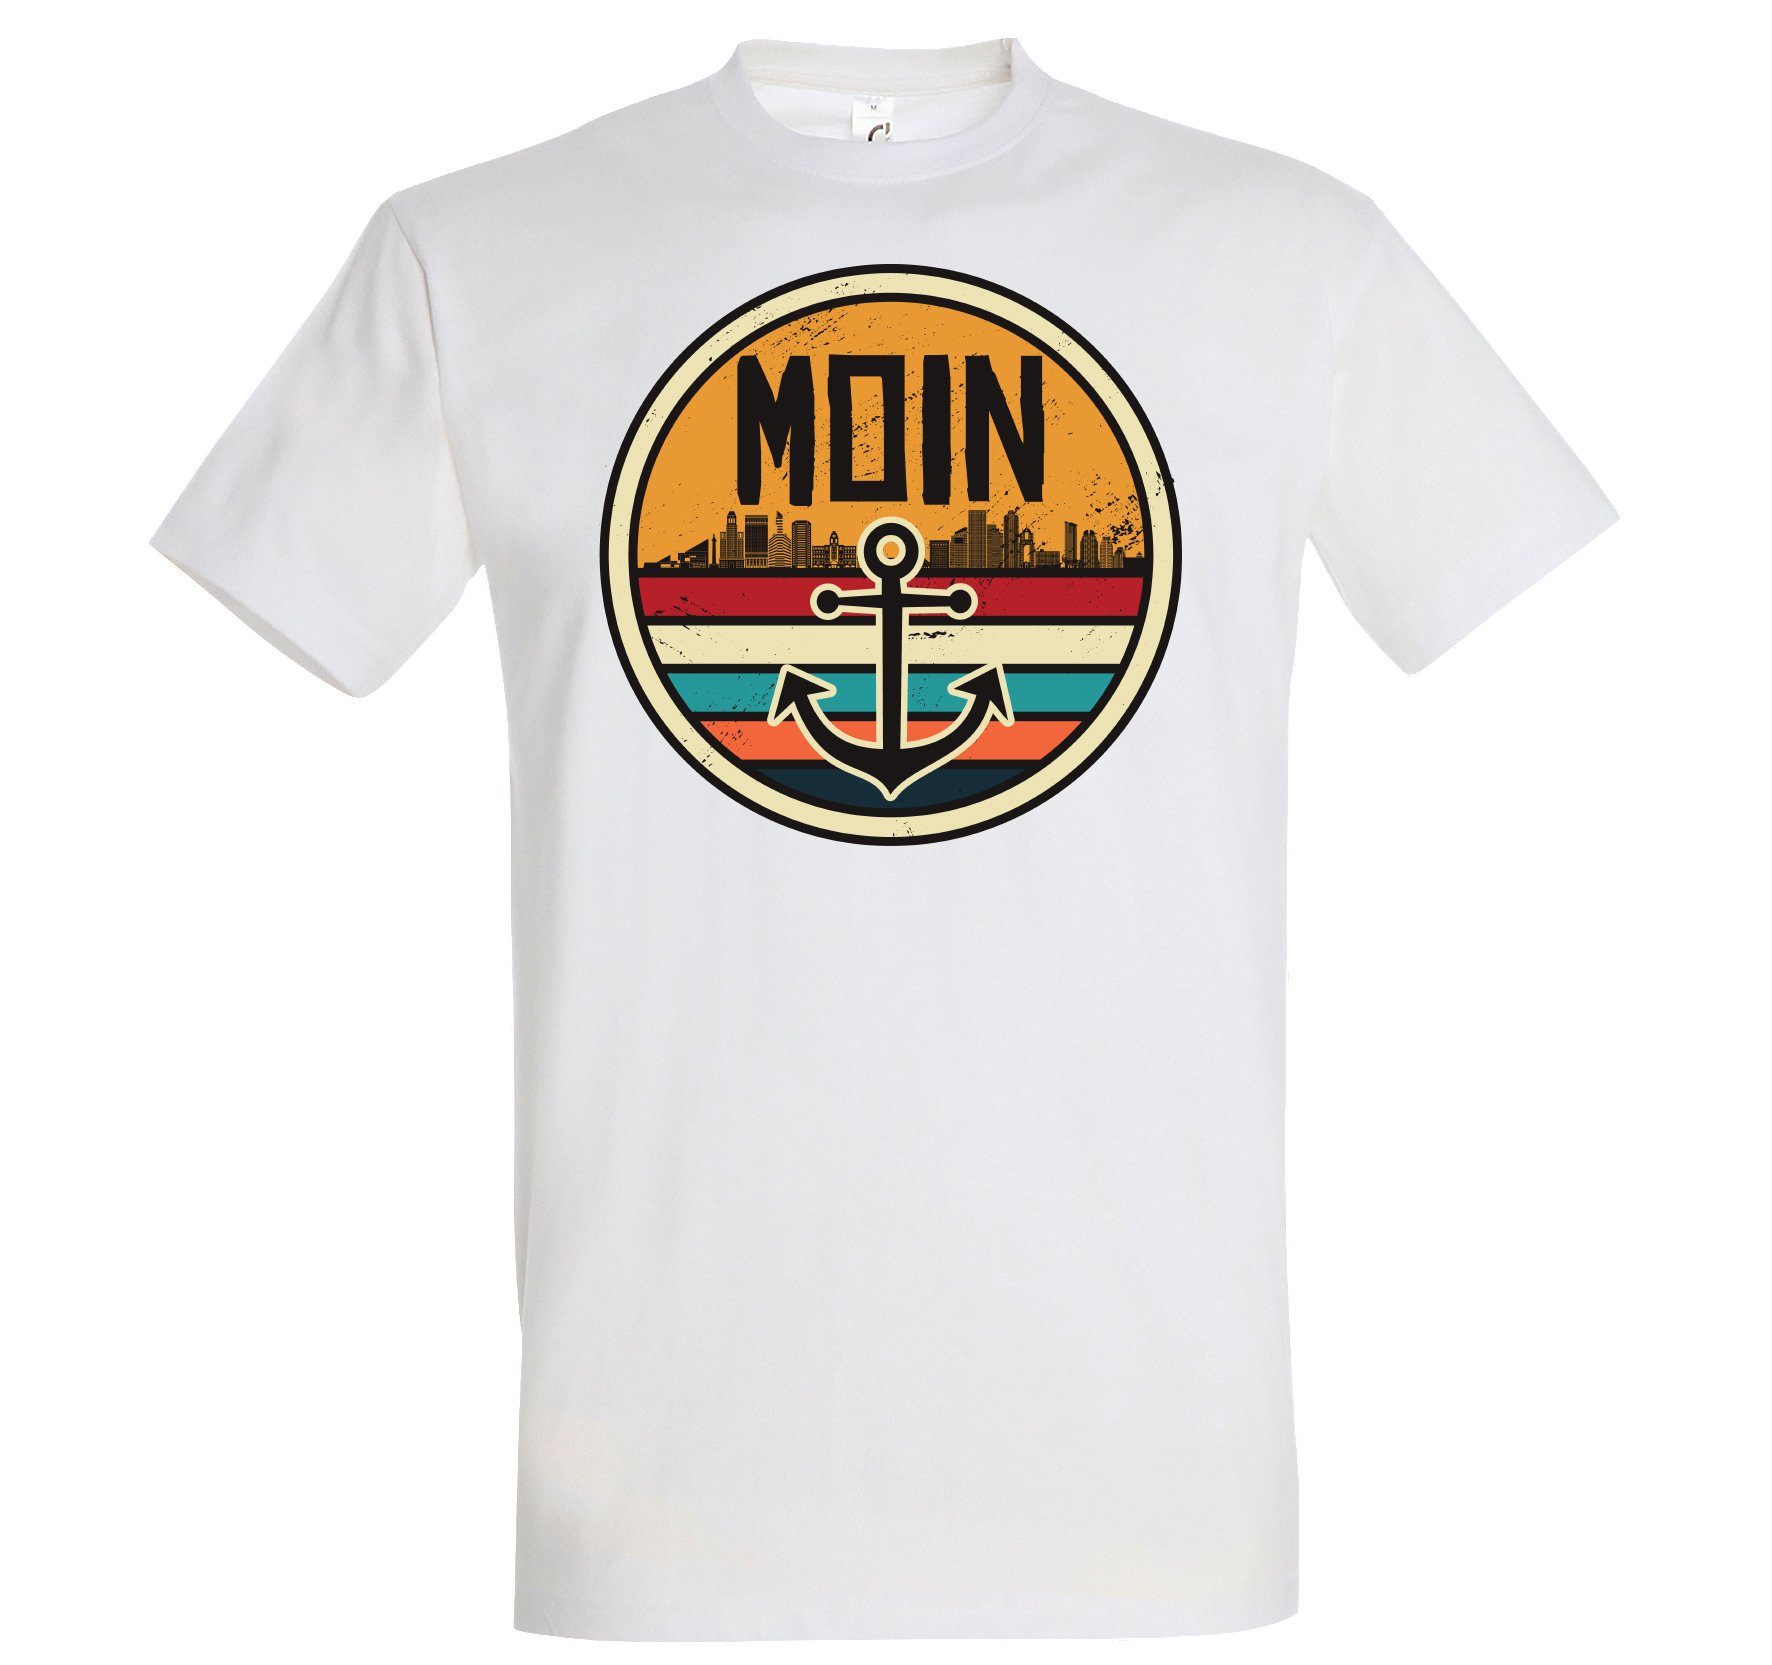 Youth Spruch Anker T-Shirt Print Moin mit Designz Weiß Spruch Herren modischem Print-Shirt Logo und